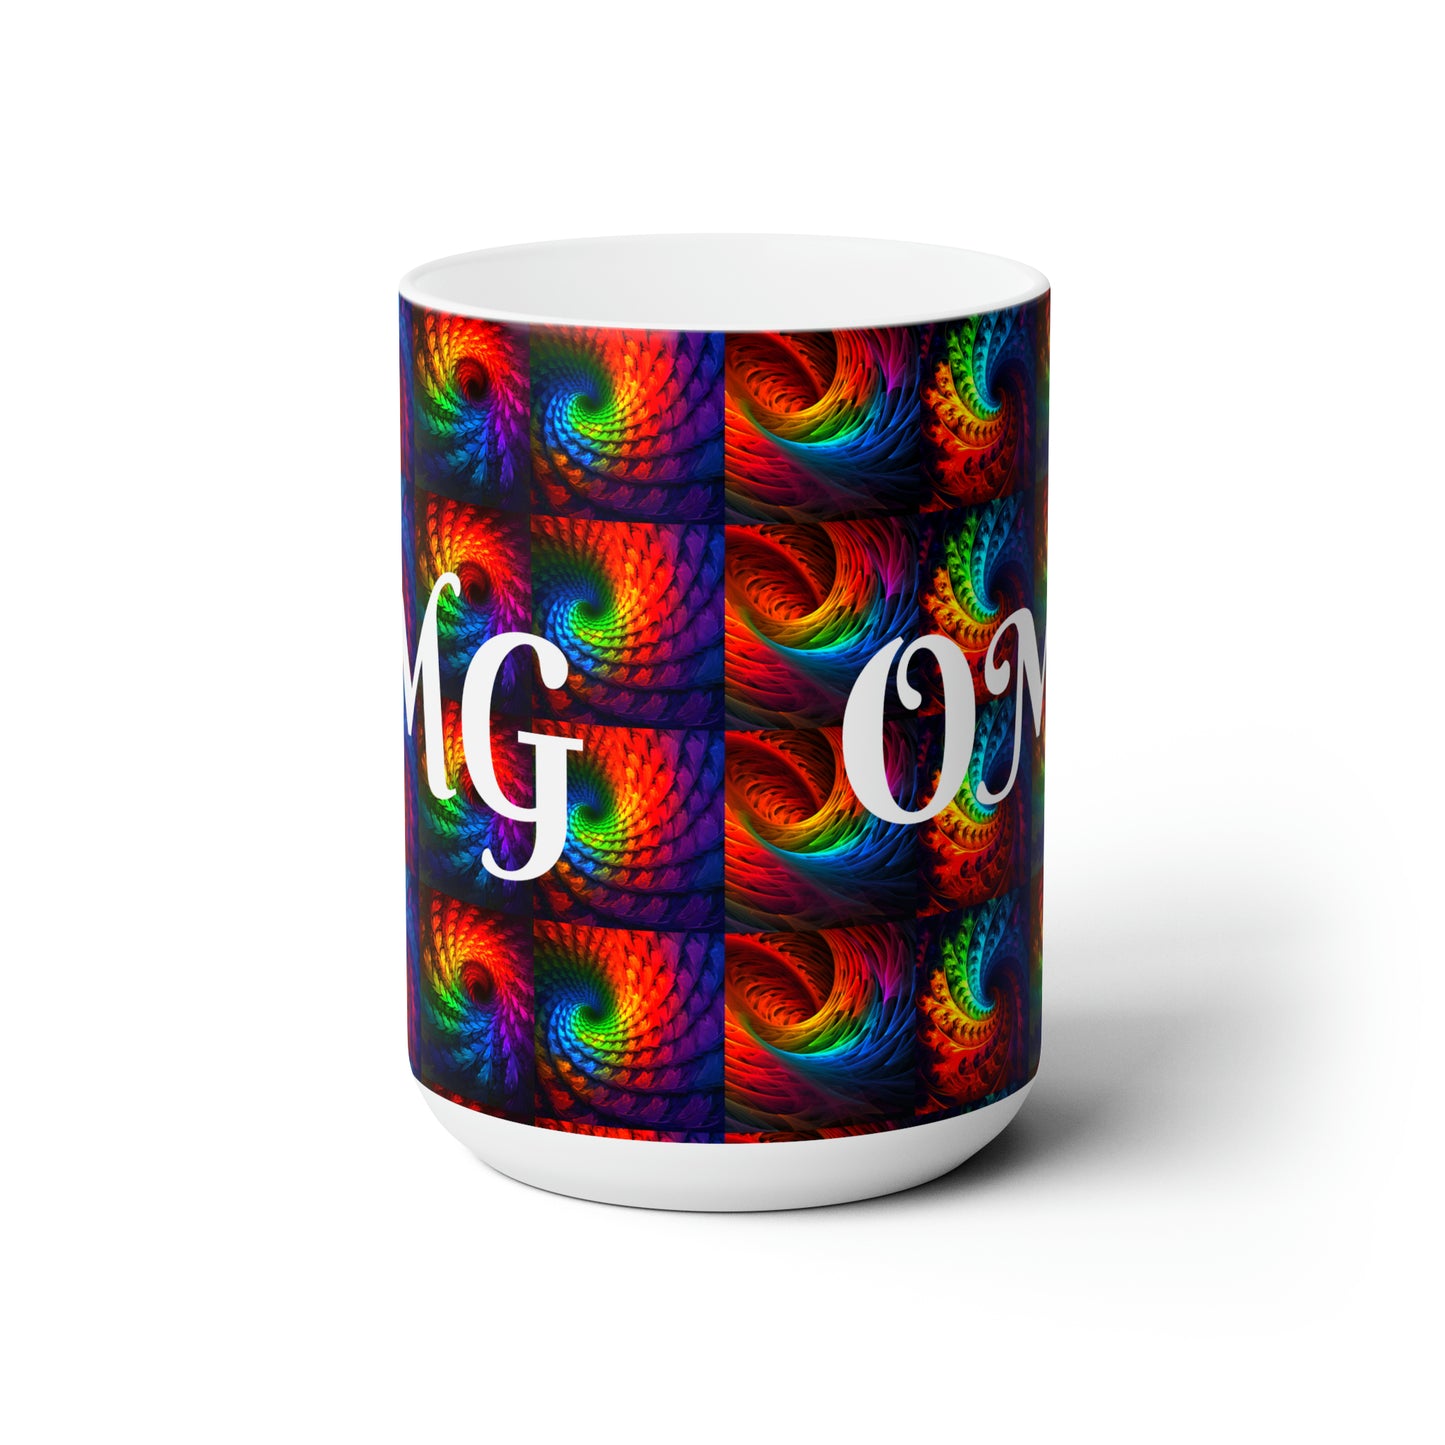 OMG - Ceramic Mug 15oz